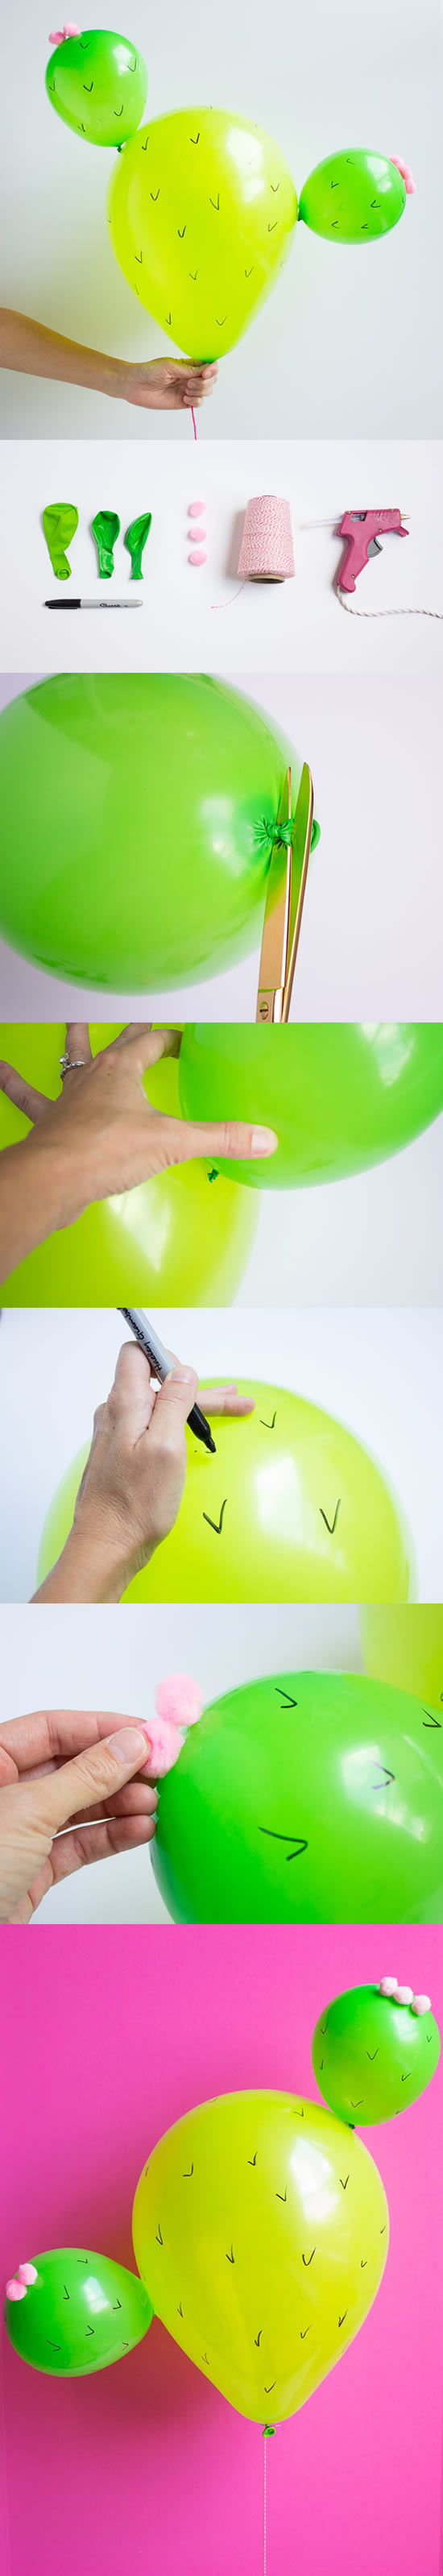 Enfeite de Cacto com Balões passo a passo